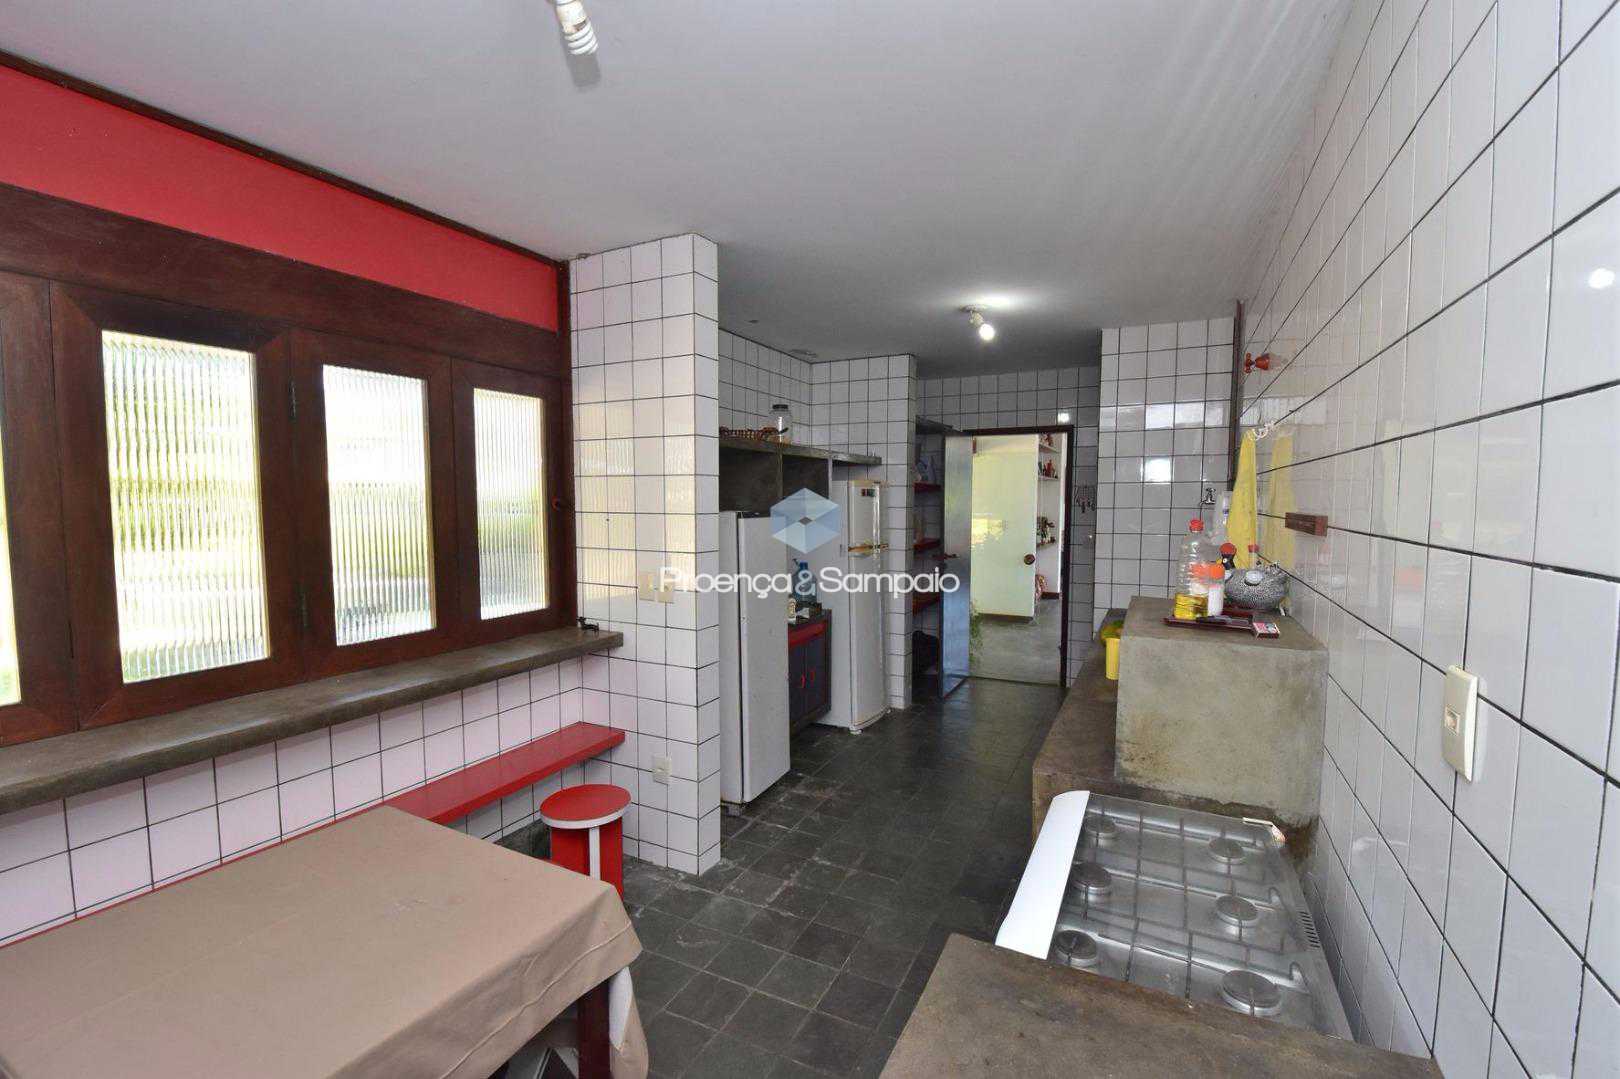 FOTO27 - Casa em Condomínio 4 quartos à venda Lauro de Freitas,BA - R$ 1.700.000 - PSCN40016 - 29